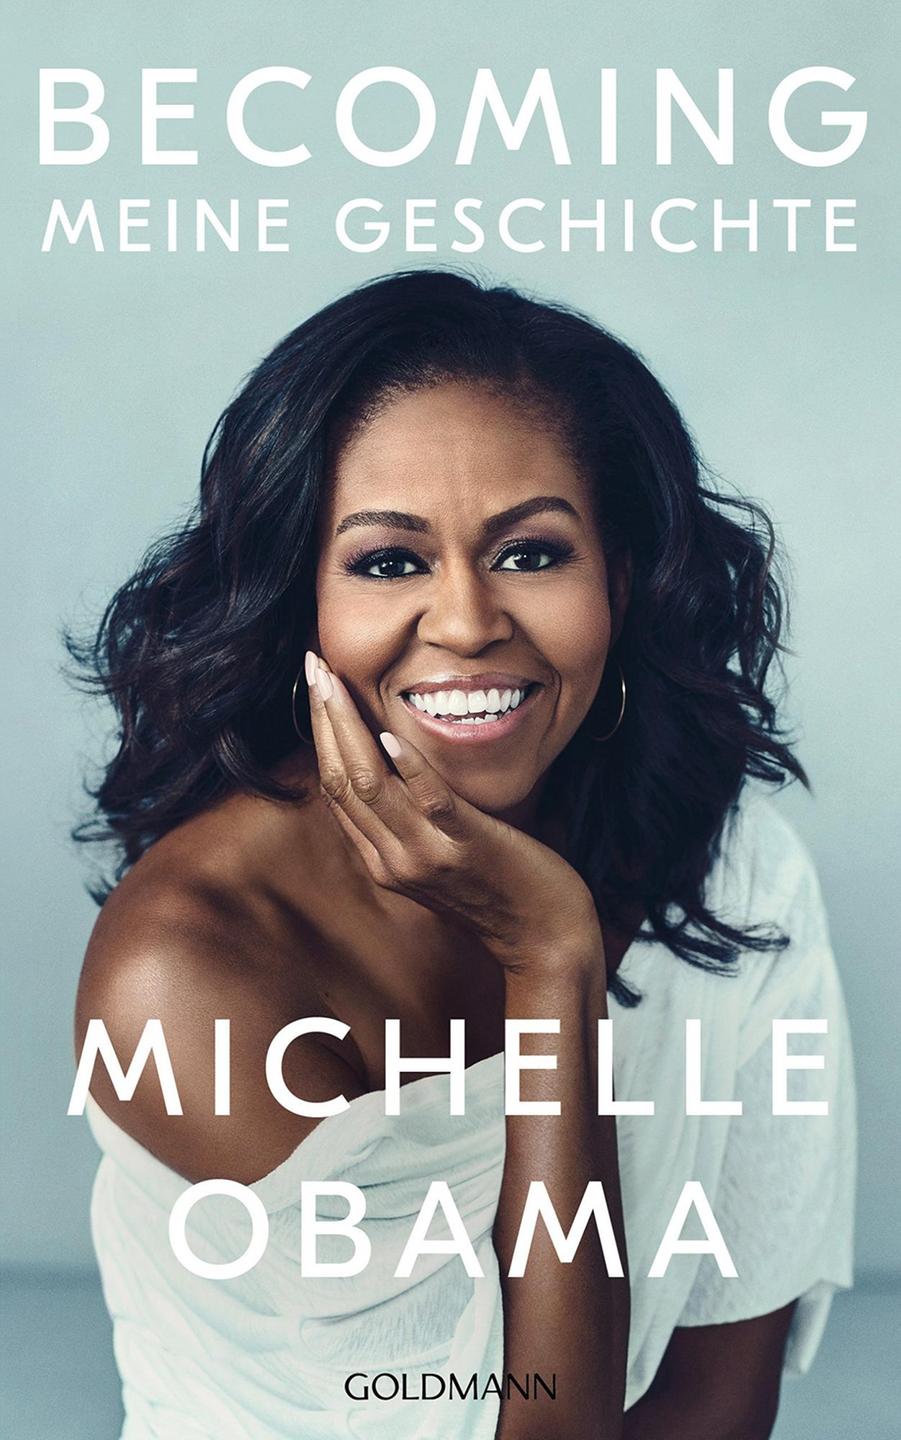 Buchcover von Michelles Obamas "Becoming – Meine Geschichte".